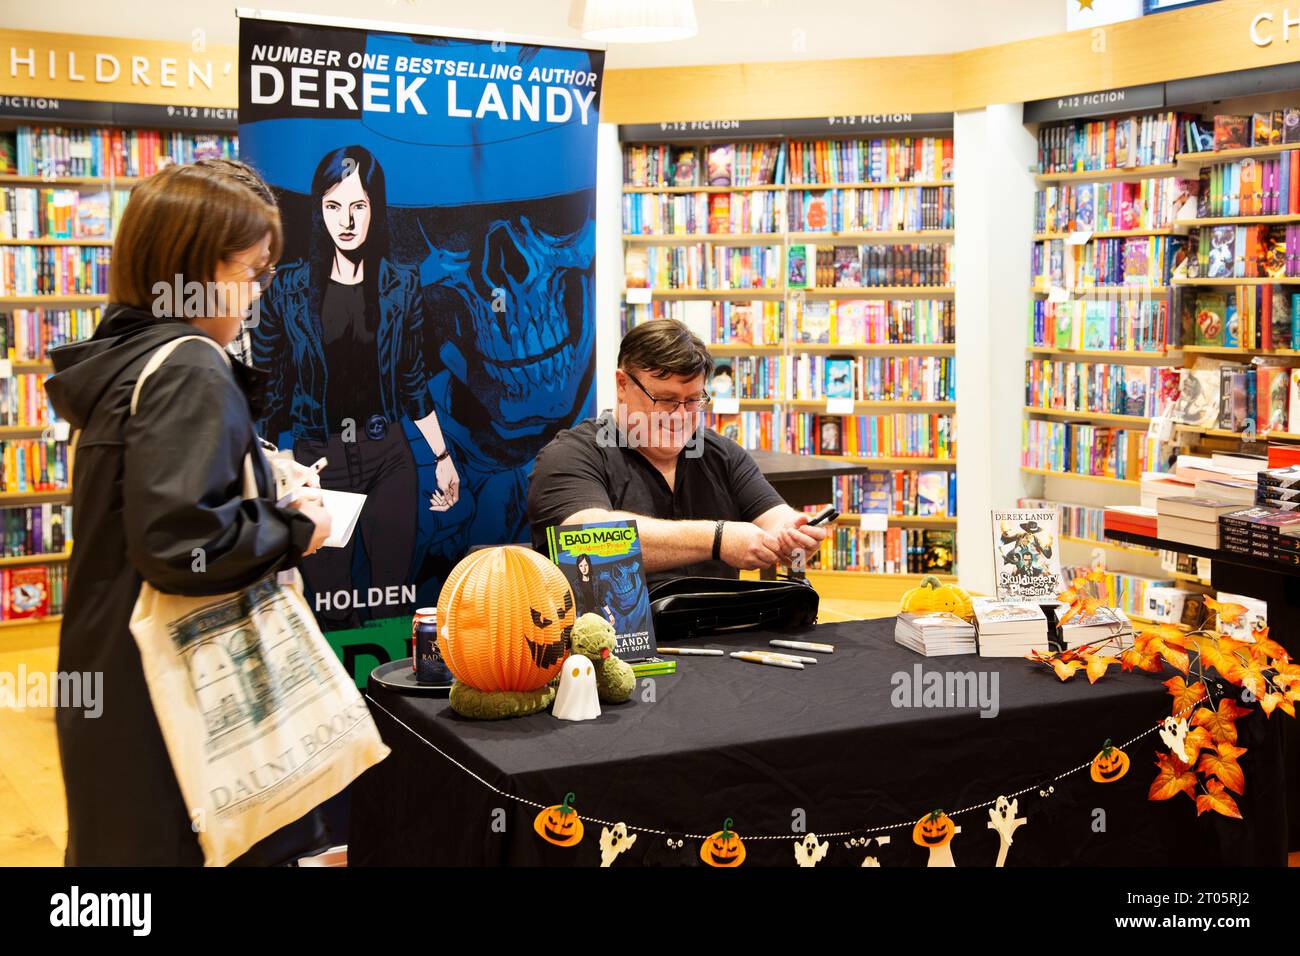 Derek Landy irischer Autor, Drehbuchautor und Autor von The Skulduggery Pleasant Books erscheint bei Waterstones in Exeter Stockfoto